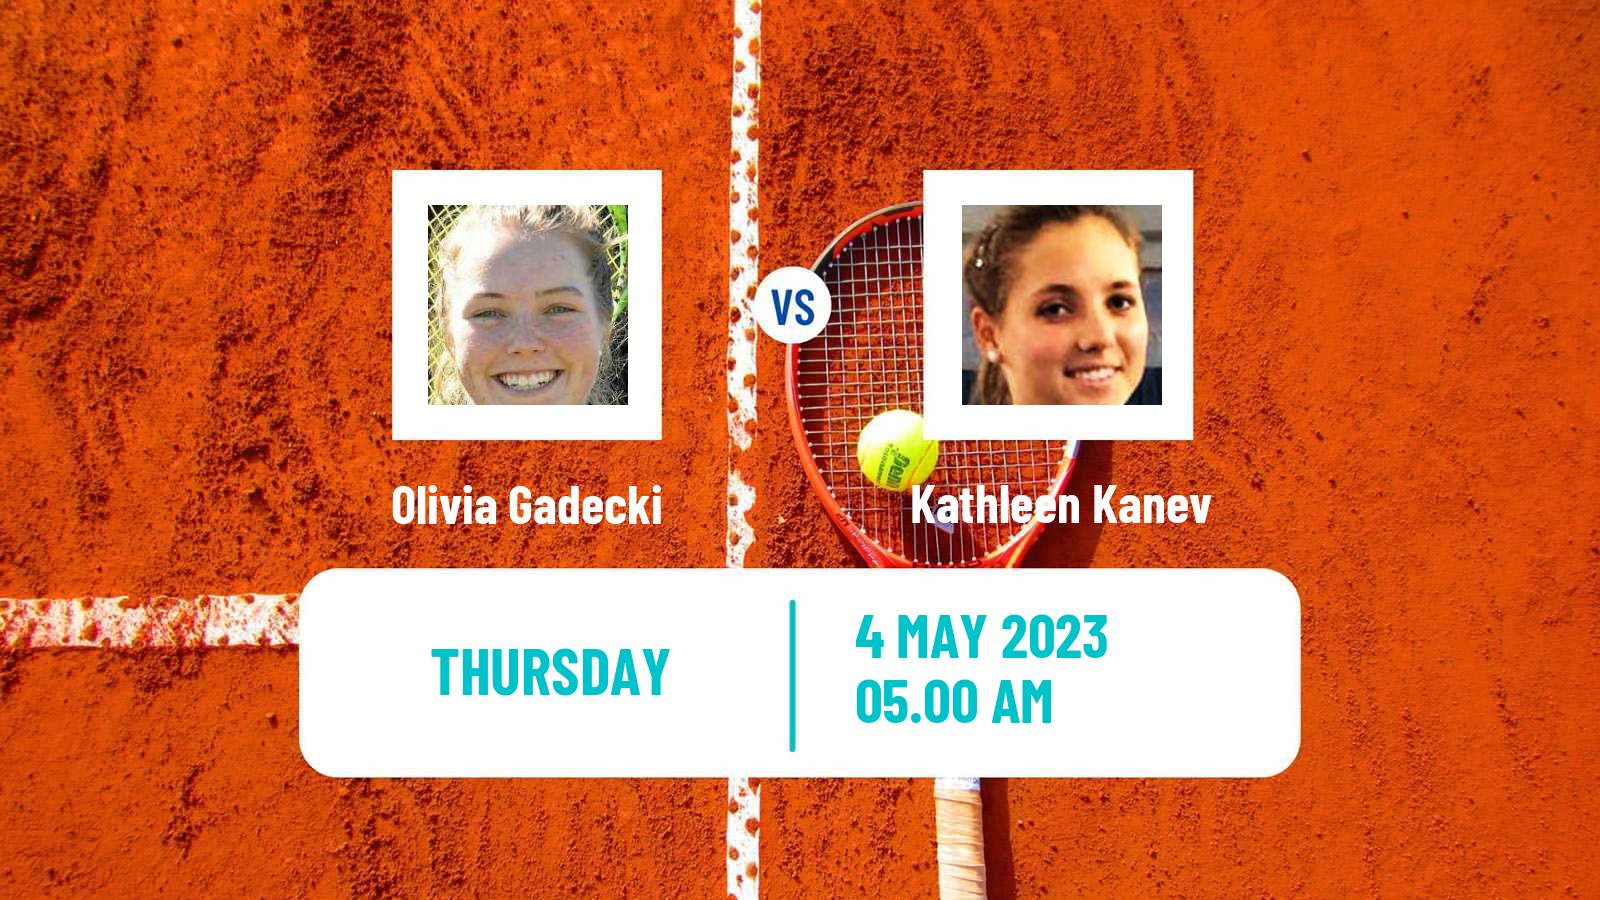 Tennis ITF Tournaments Olivia Gadecki - Kathleen Kanev